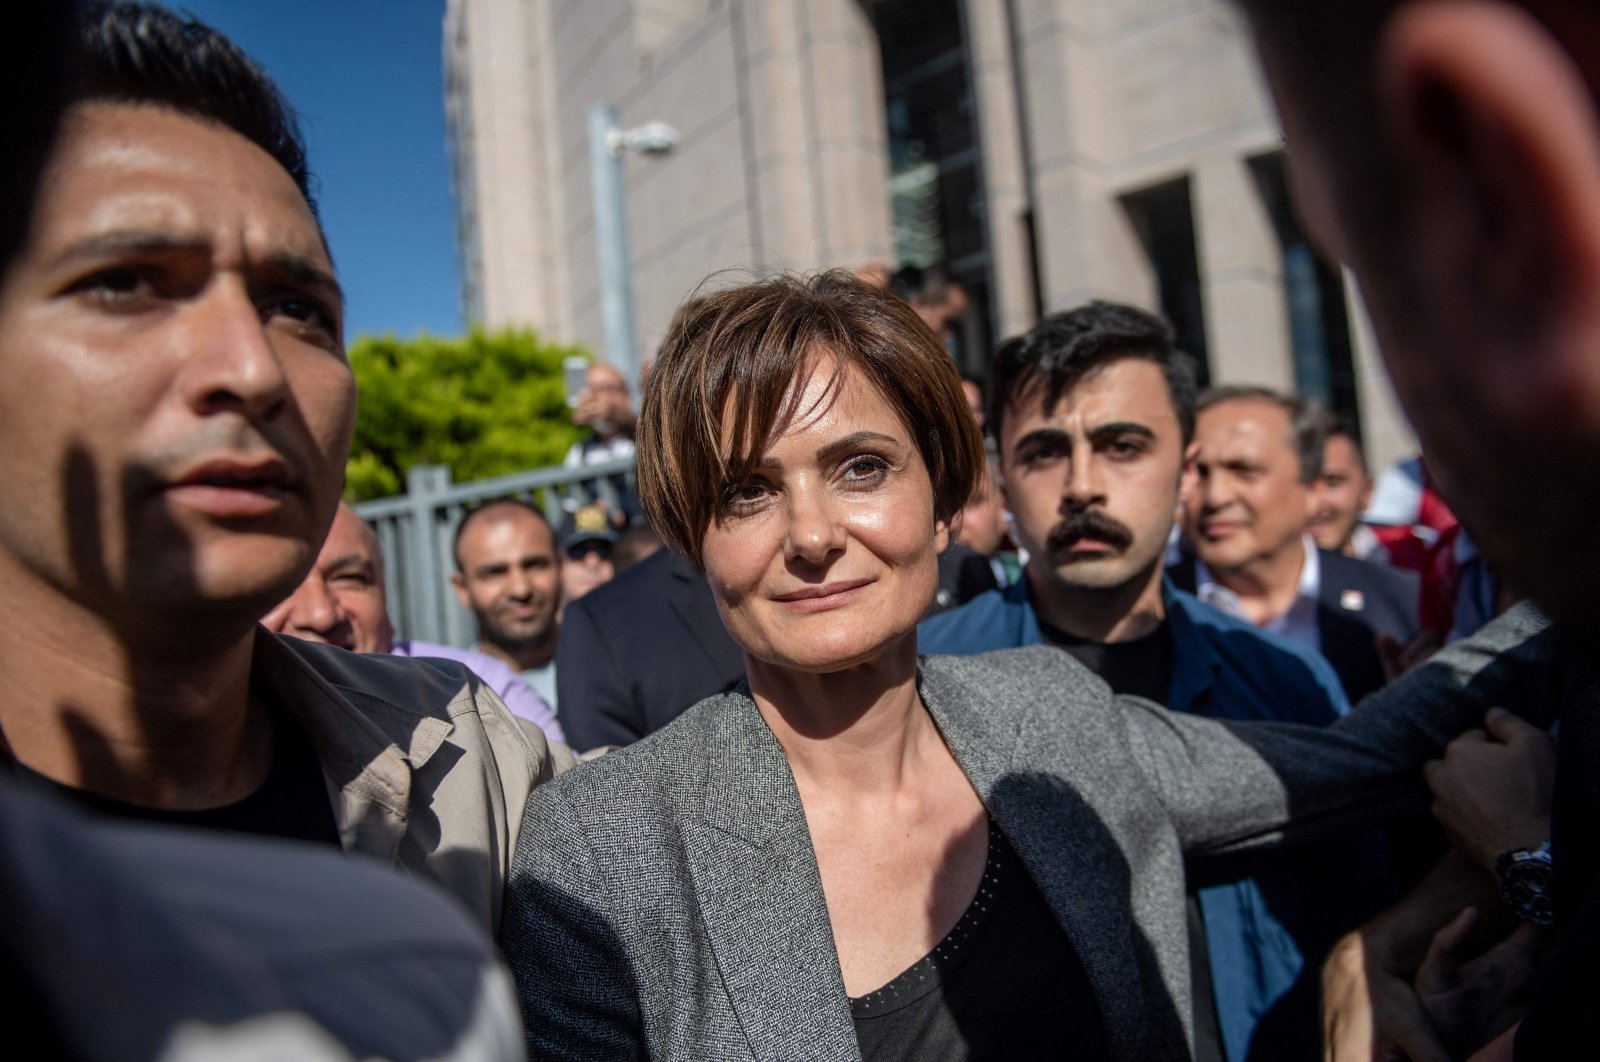 Mahkamah Agung menegakkan hukuman penjara untuk kepala CHP Istanbul Kaftancıoğlu